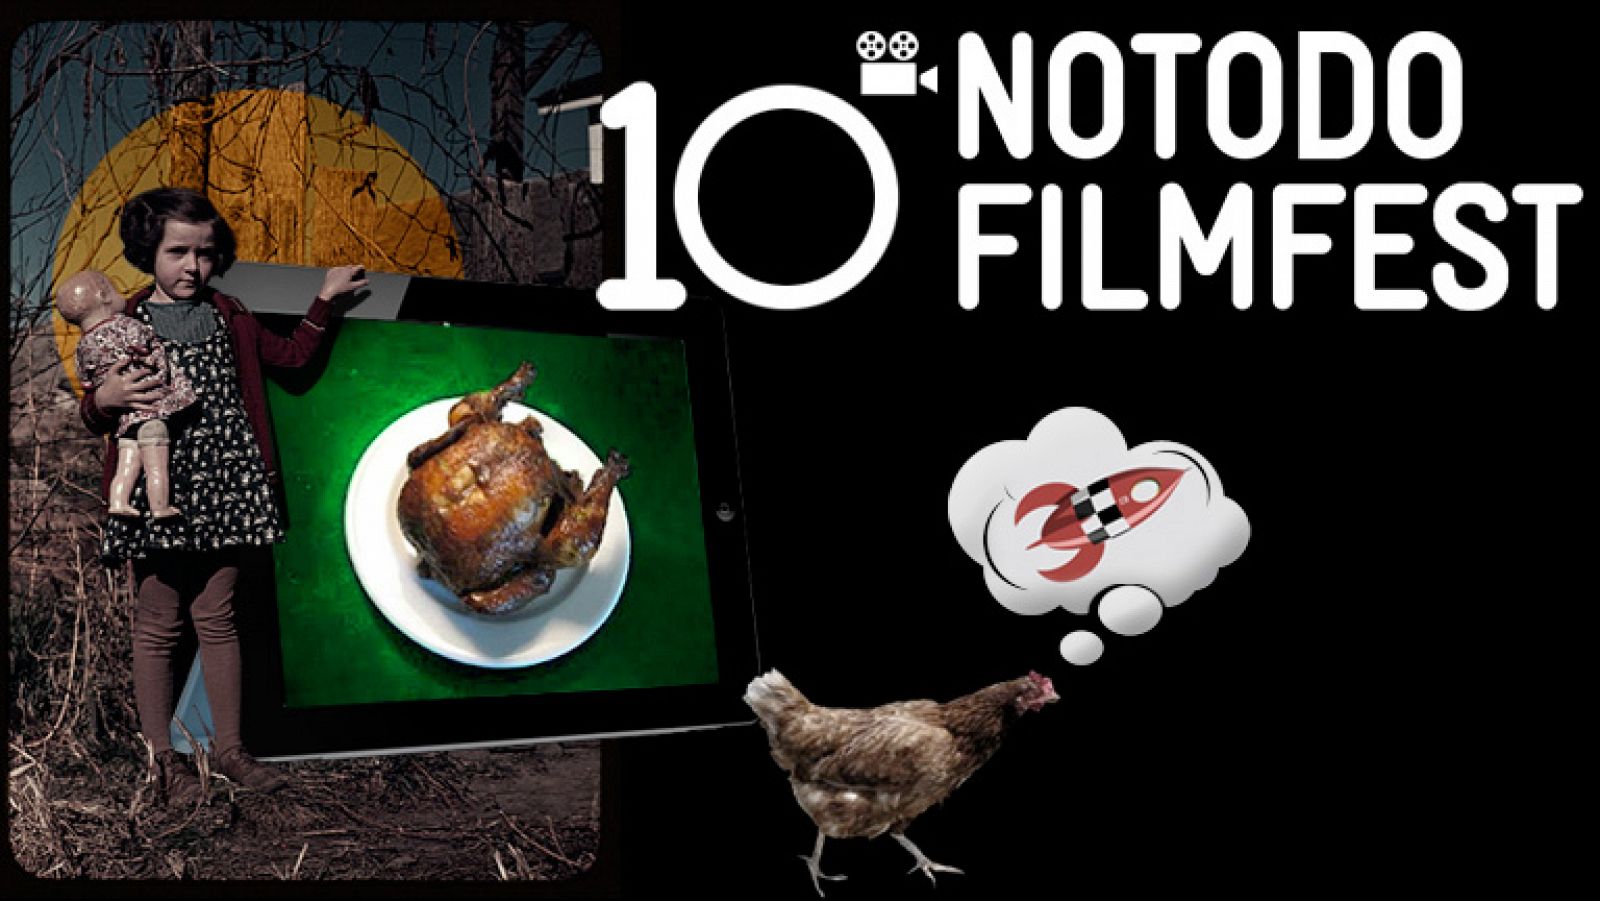 Una década de cortos - Décimo aniversario del Notodofilmfest